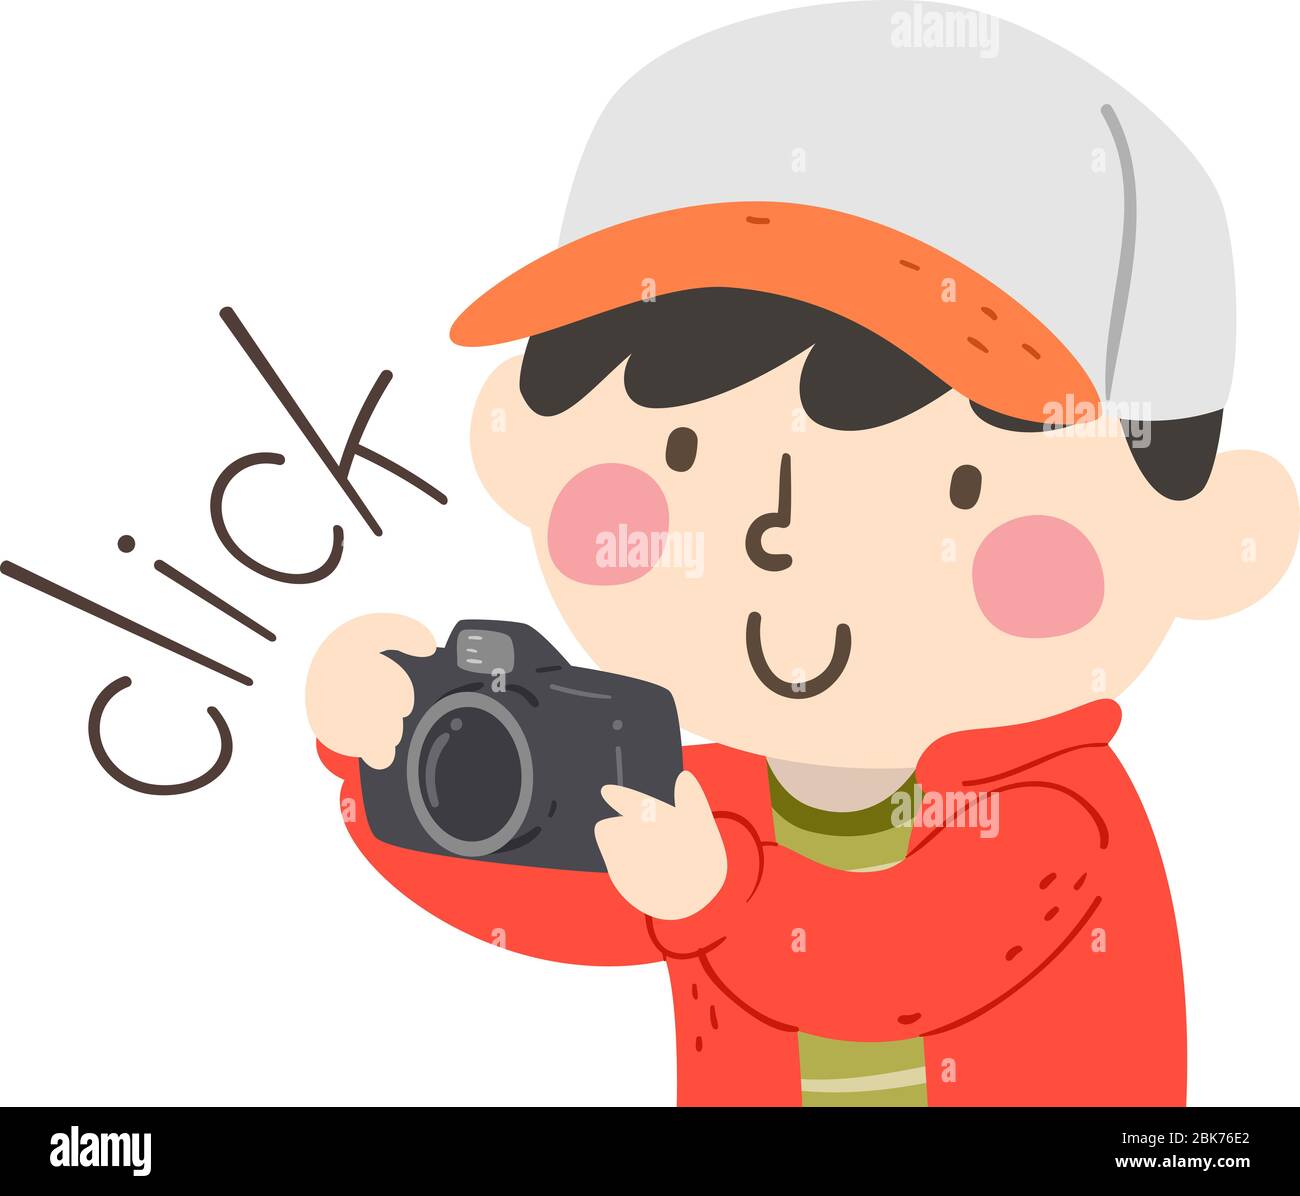 Ilustración de un niño usando una cámara y produciendo un sonido del tecleo  Fotografía de stock - Alamy